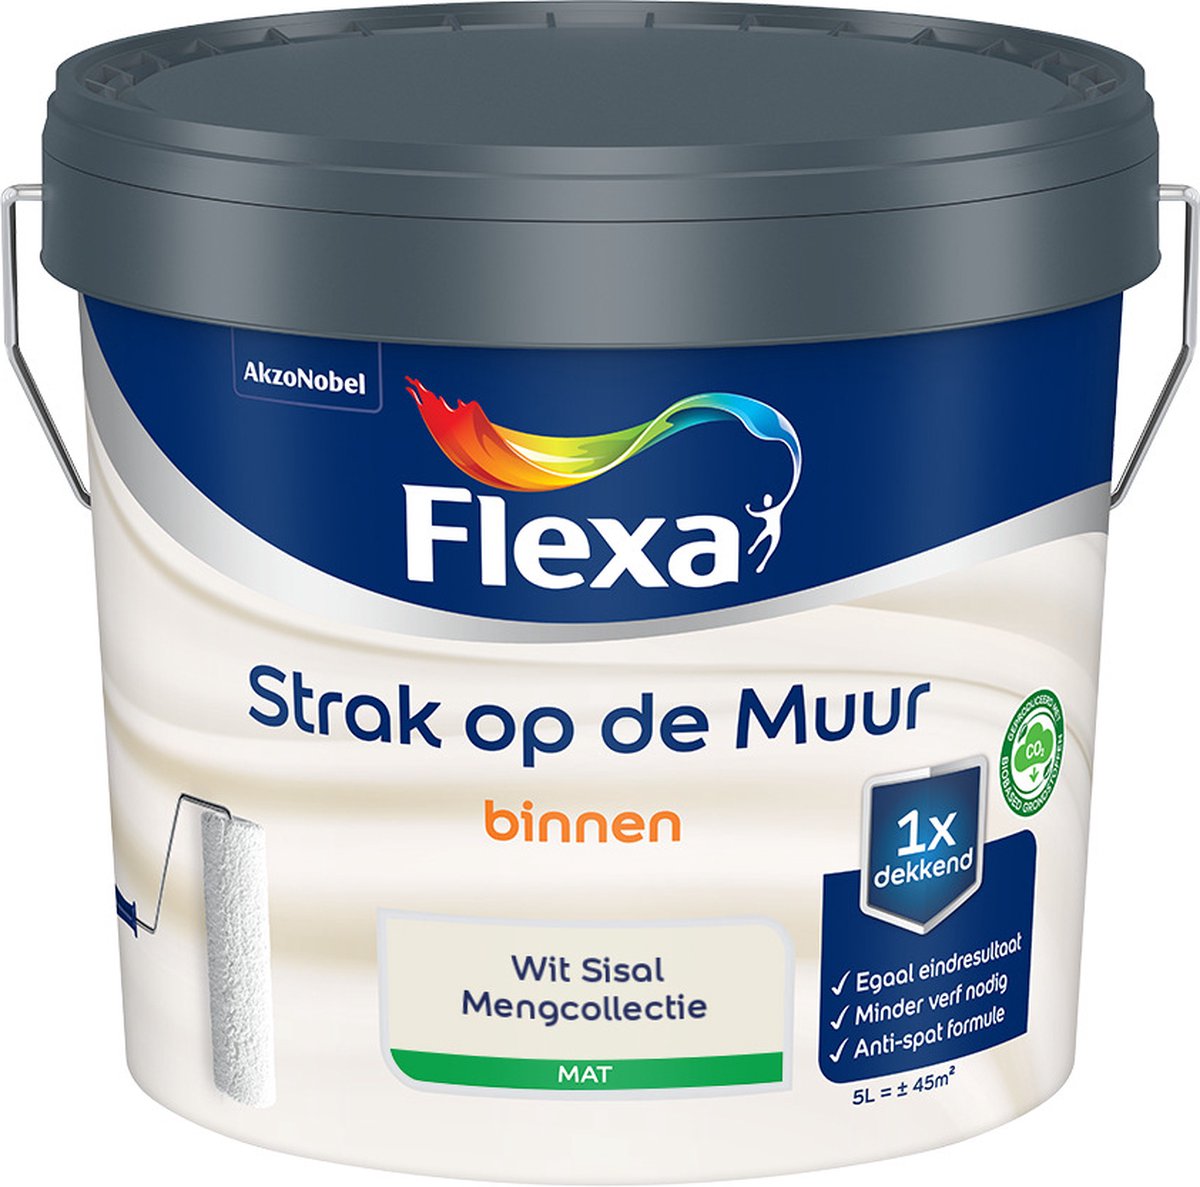 Flexa Strak op de muur - Muurverf - Mengcollectie - Wit Sisal - 5 Liter